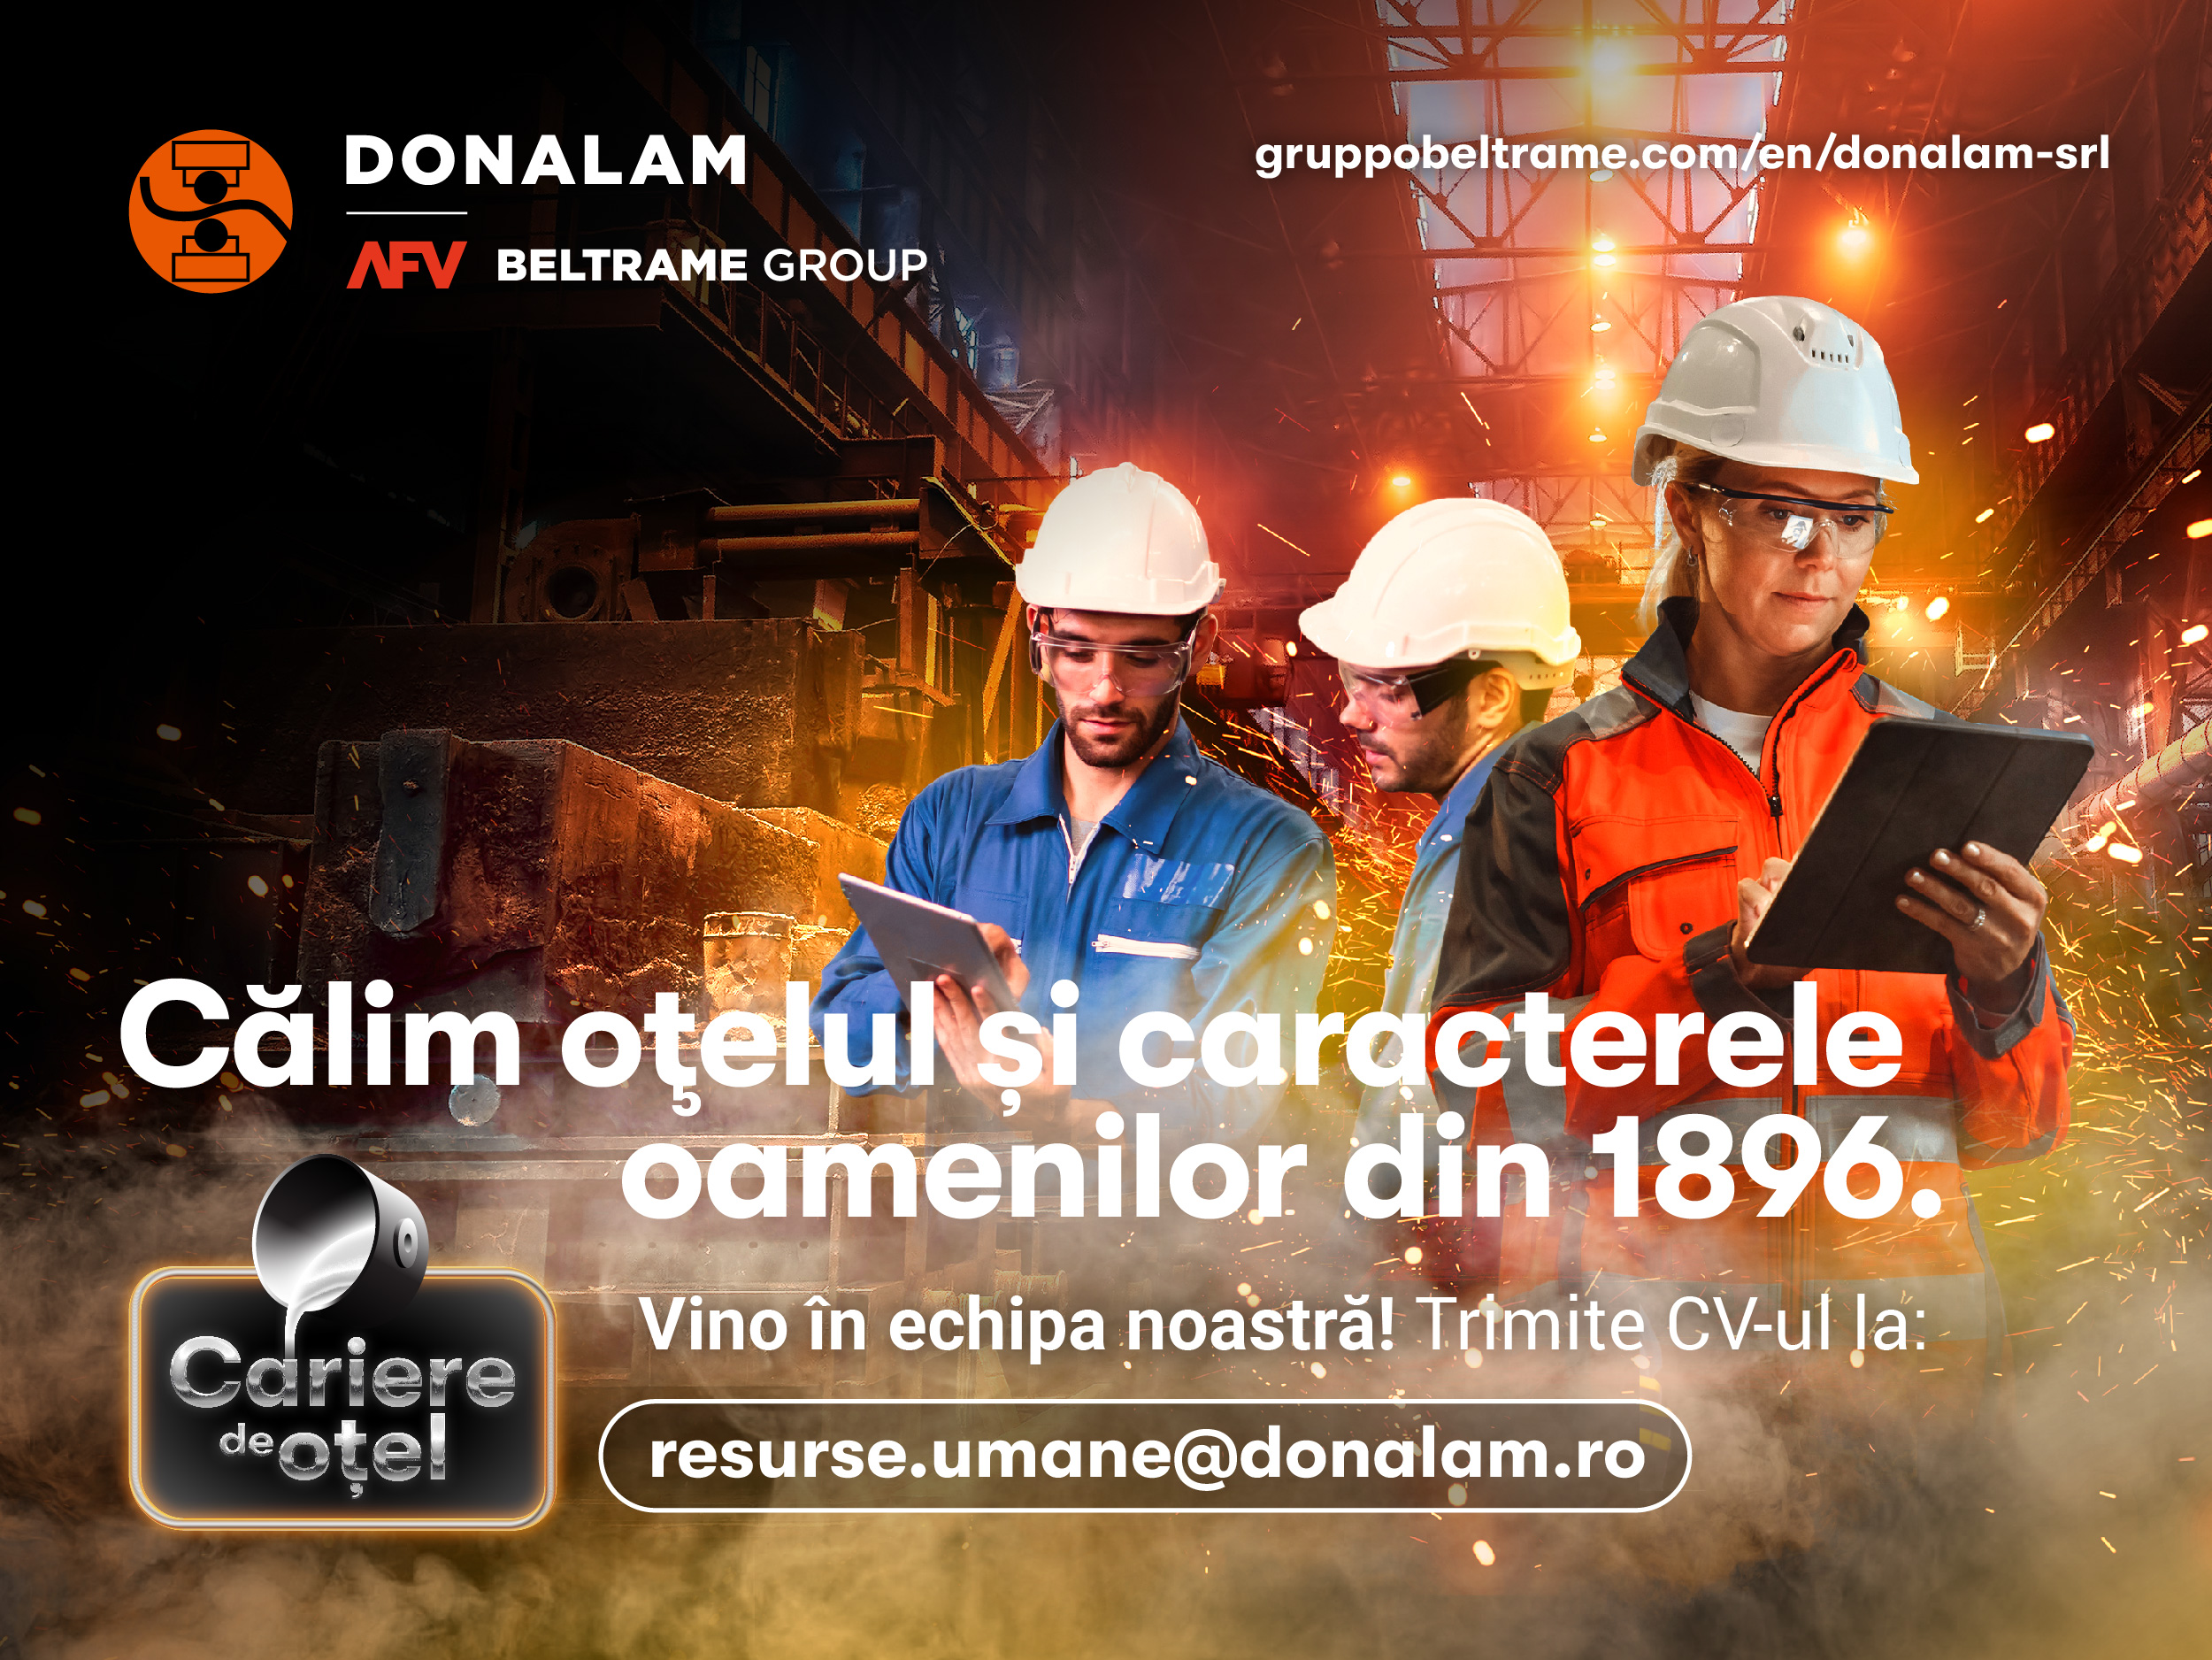 Compania Donalam, membră a AFV Beltrame Grup, recrutează forță de muncă pentru combinatul de la Târgoviște